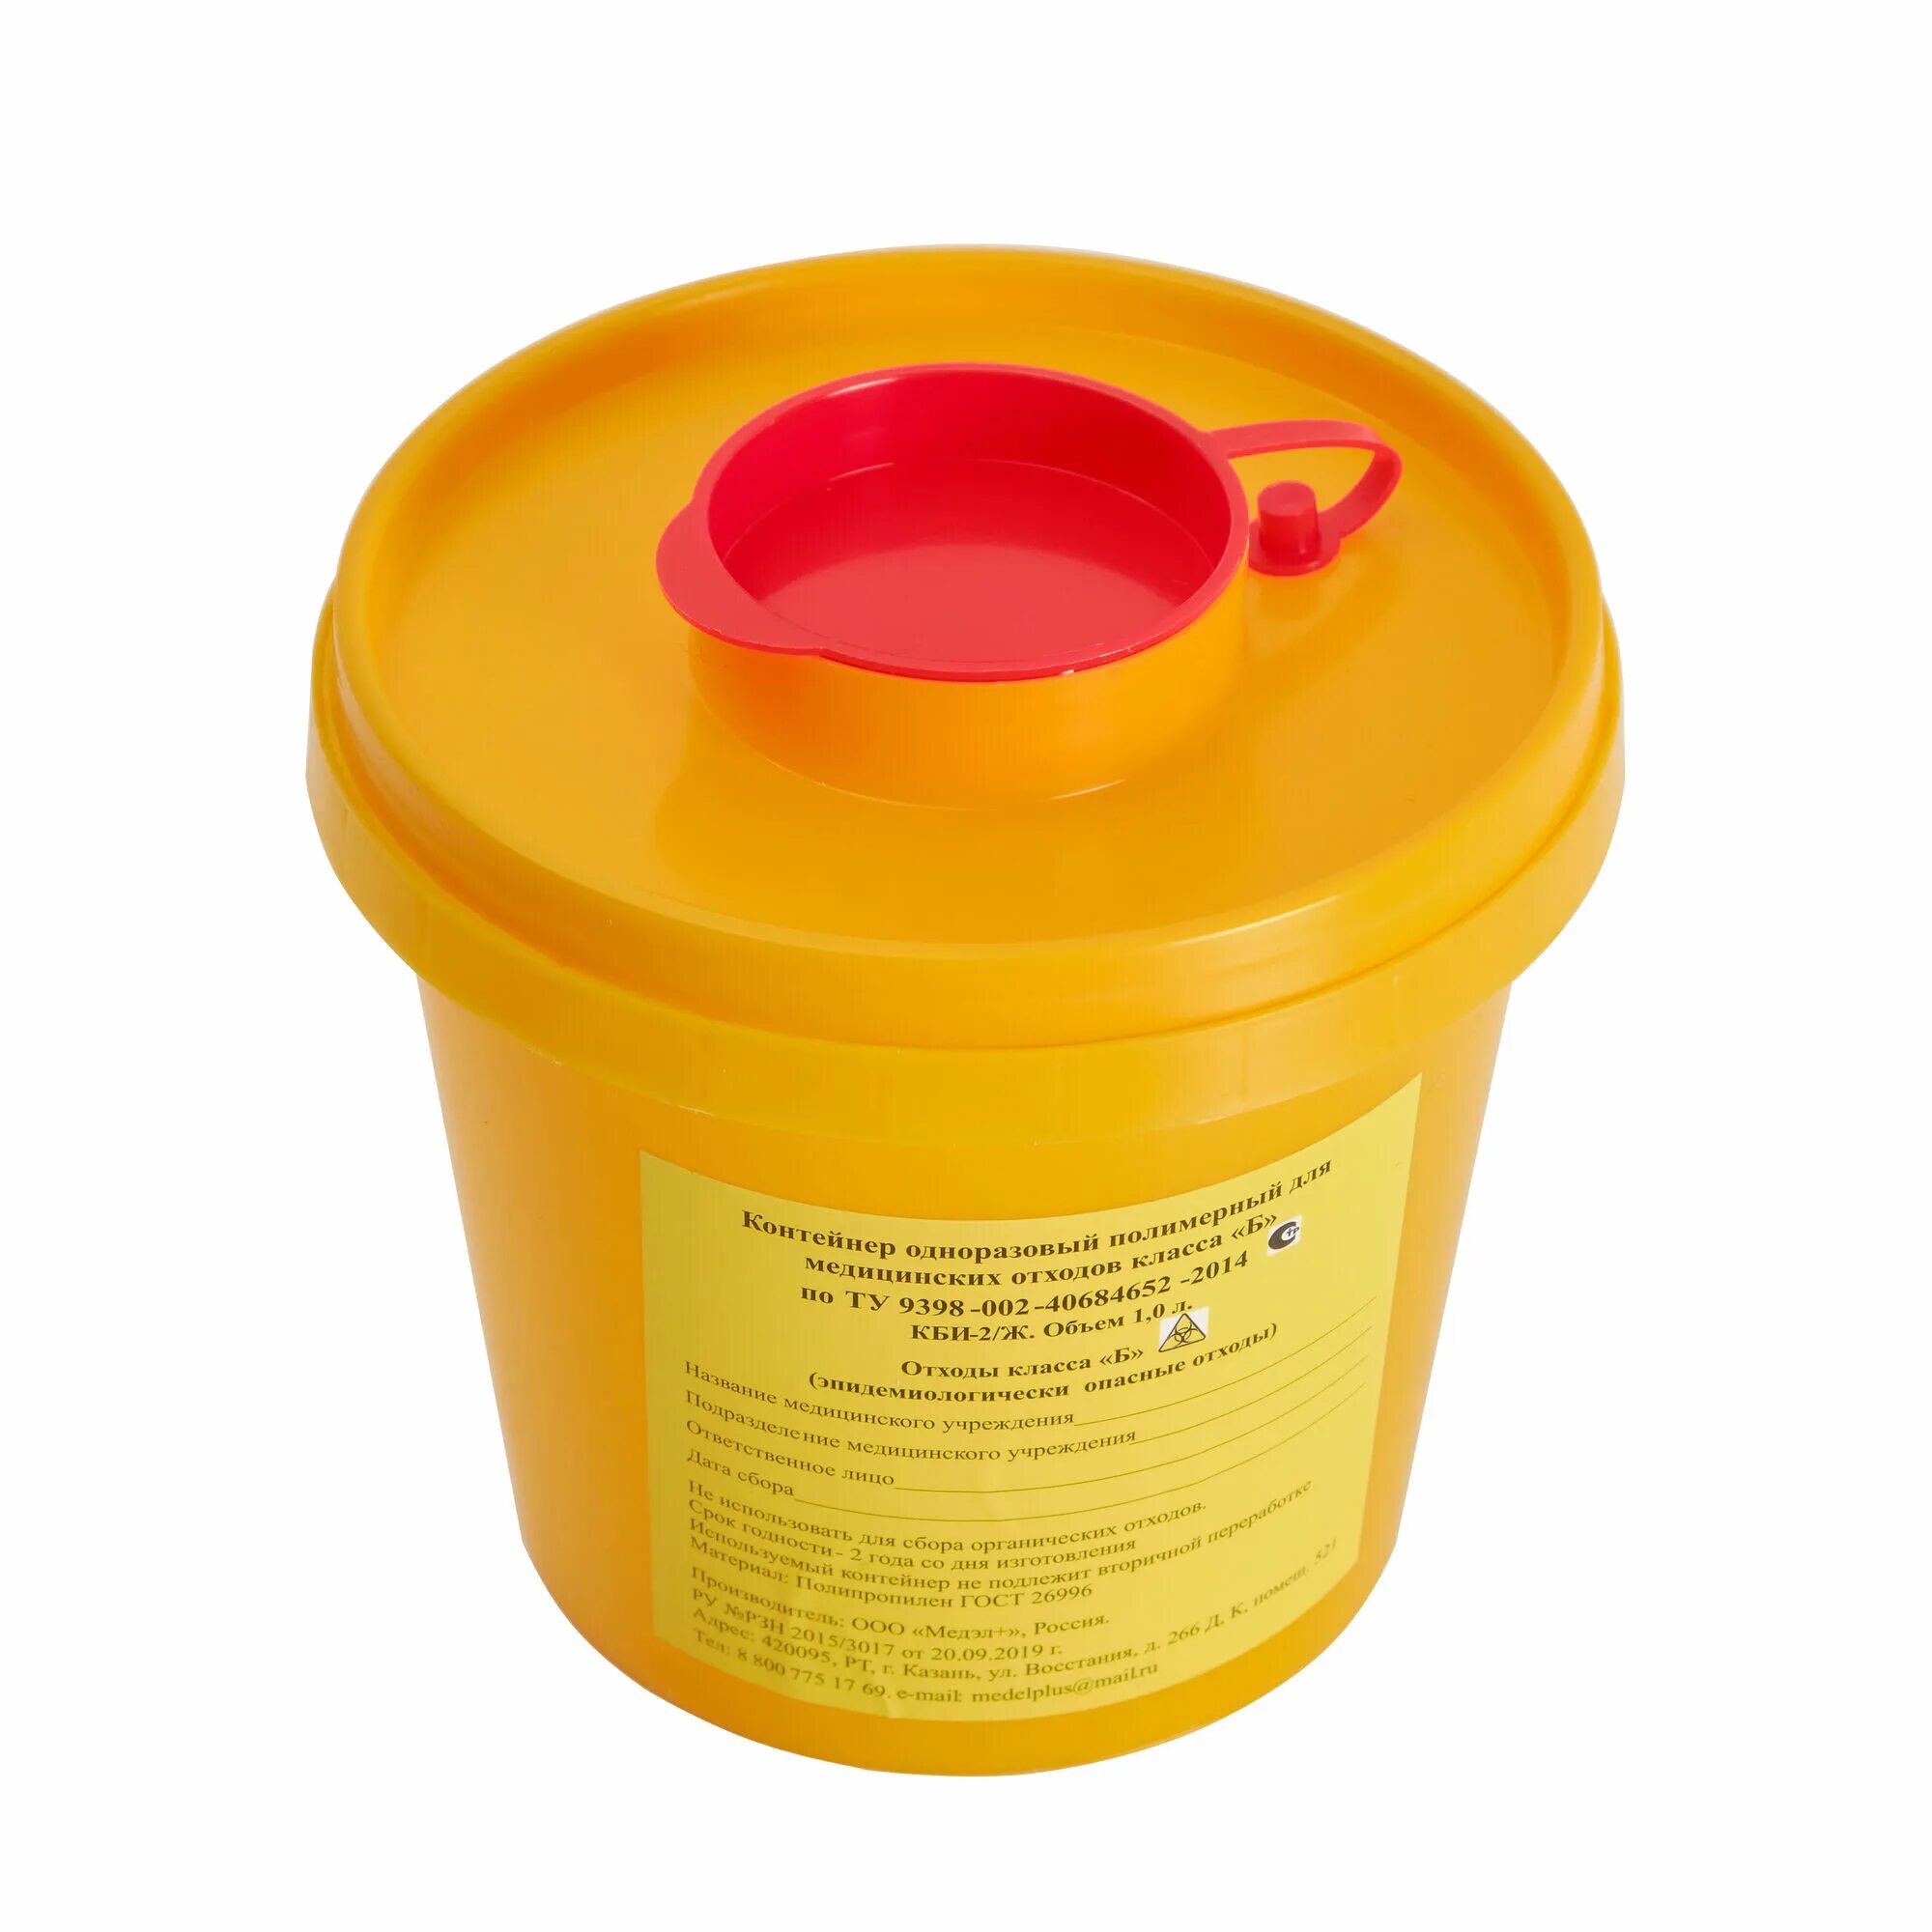 Емкость-контейнер для медицинских отходов/2018 (4 пусковой), шт. Емкость-контейнер для сбора игл 0.5л кл.б ЕЛАТ. Емкость-контейнер для сбора игл 1,0л кл.б (желтый) "респект". Контейнер для утилизации игл 1.1 л. Контейнер для сбора органических отходов